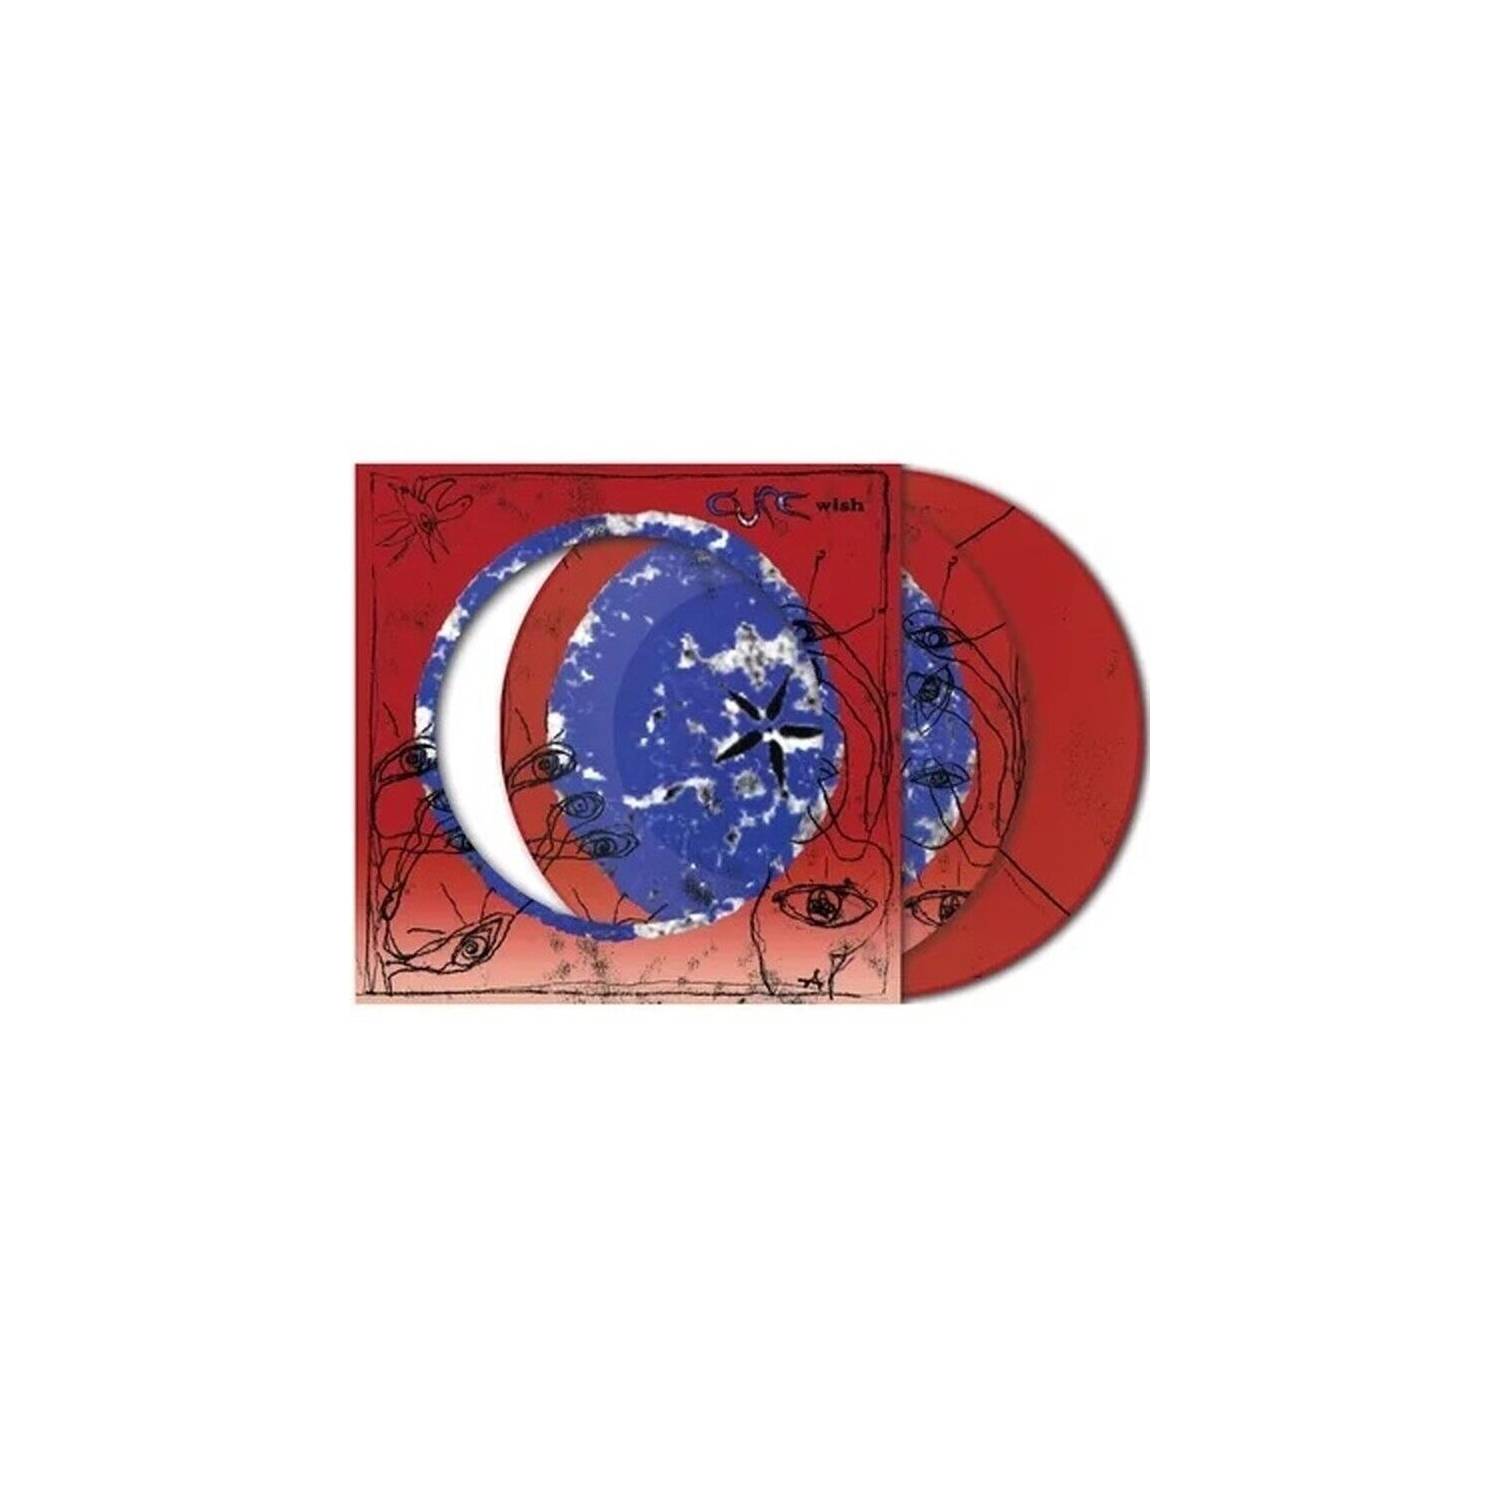 Elektra Records The Cure Wish 30TH Anniversary Edition RSD Vinilo